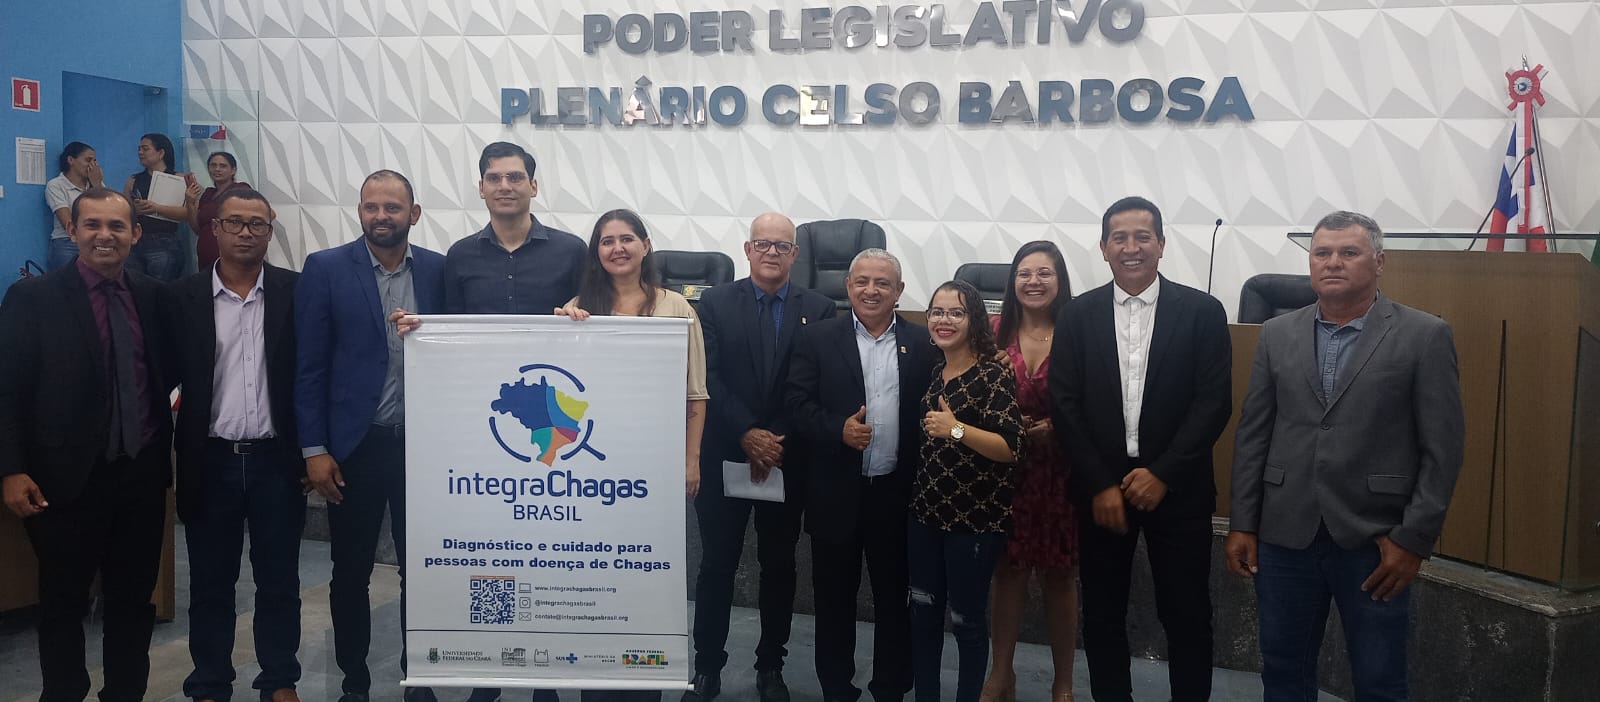 Projeto IntegraChagas Brasil reforça a necessidade de vigilância, diagnóstico e cuidado a pessoas com Doença de Chagas no país